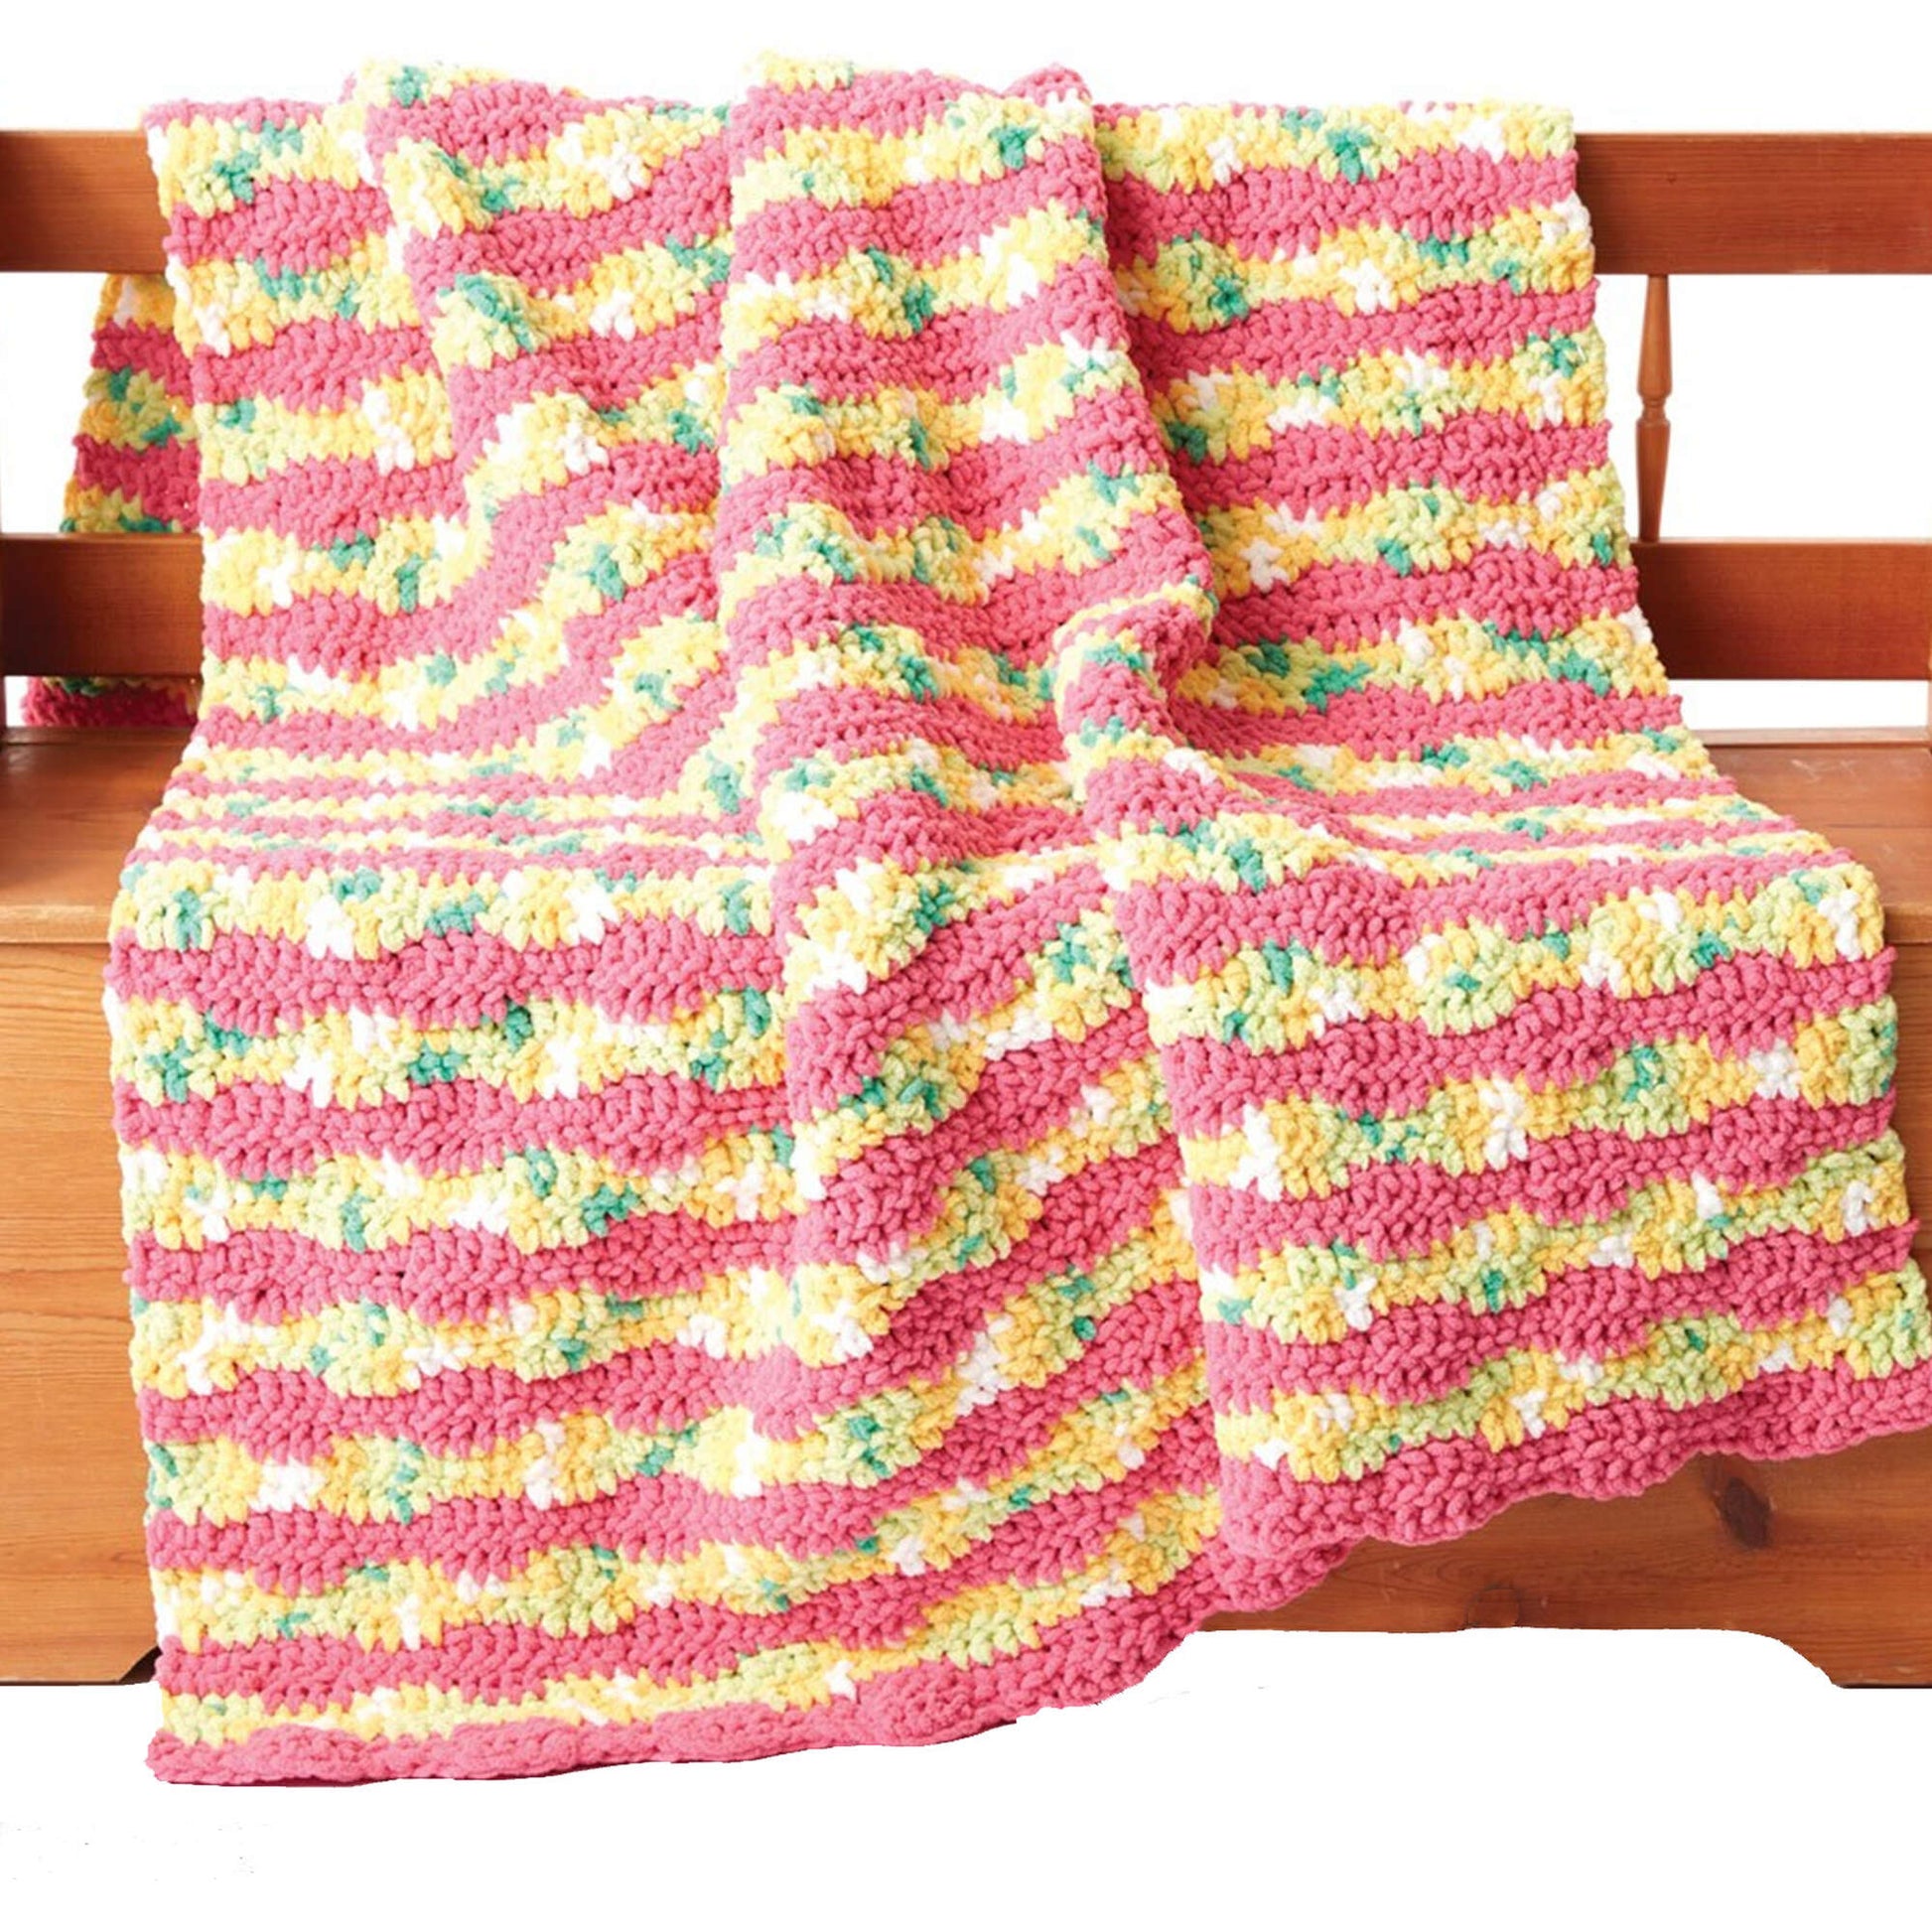 Bernat Summer Waves Crochet Blanket Crochet Blanket made in Bernat Blanket yarn